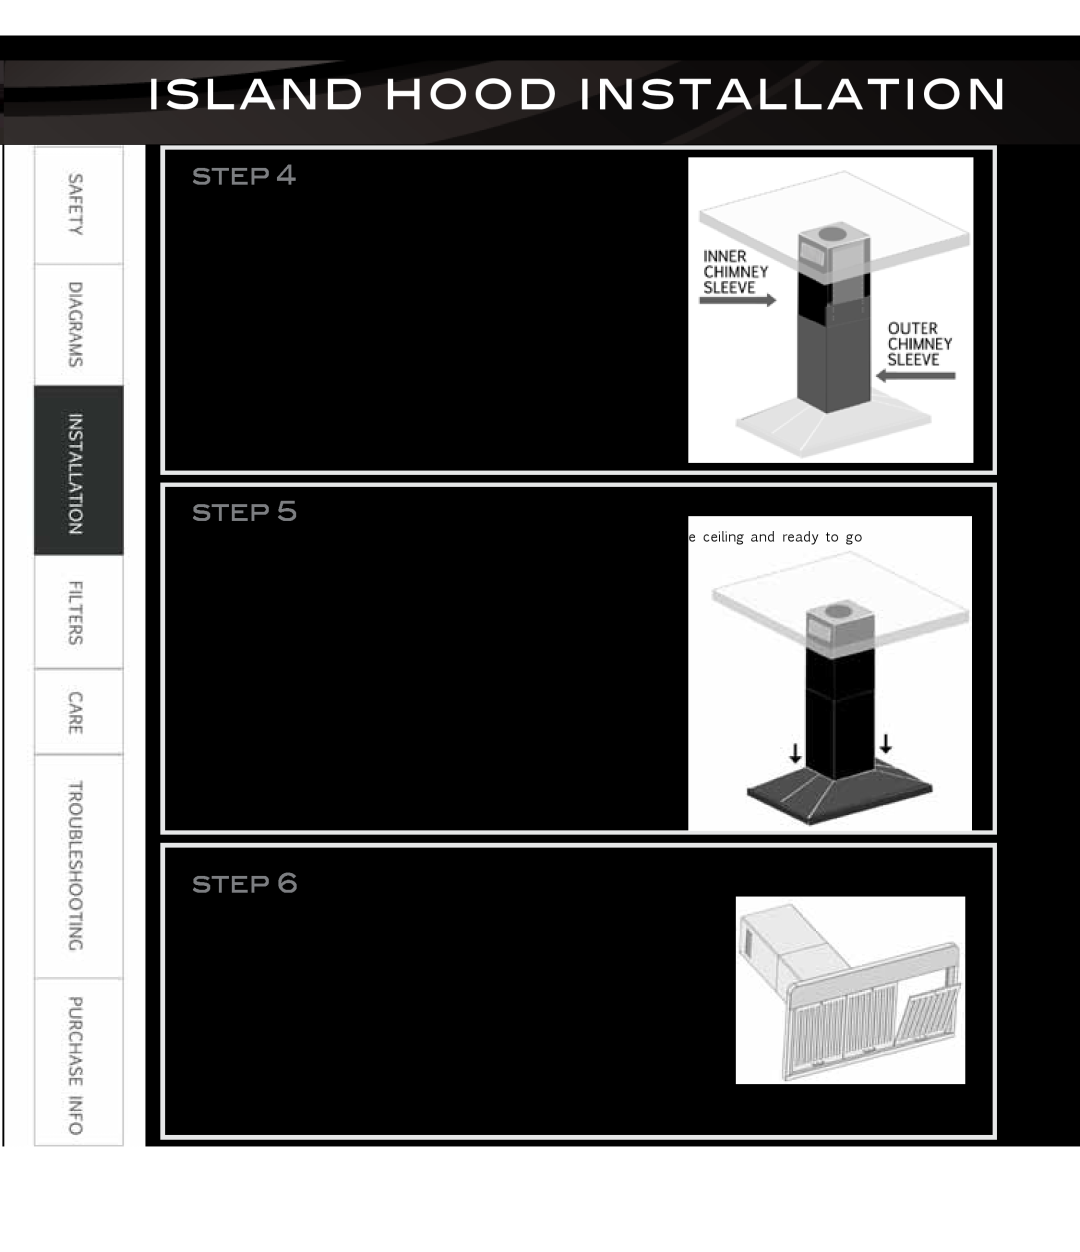 Proline PLZWKF, PLZWKL2, PLZW697, PLZWKE, PLZIGS2 Install Chimney, Attach Hood, Install Filters, Island Hood Installation 